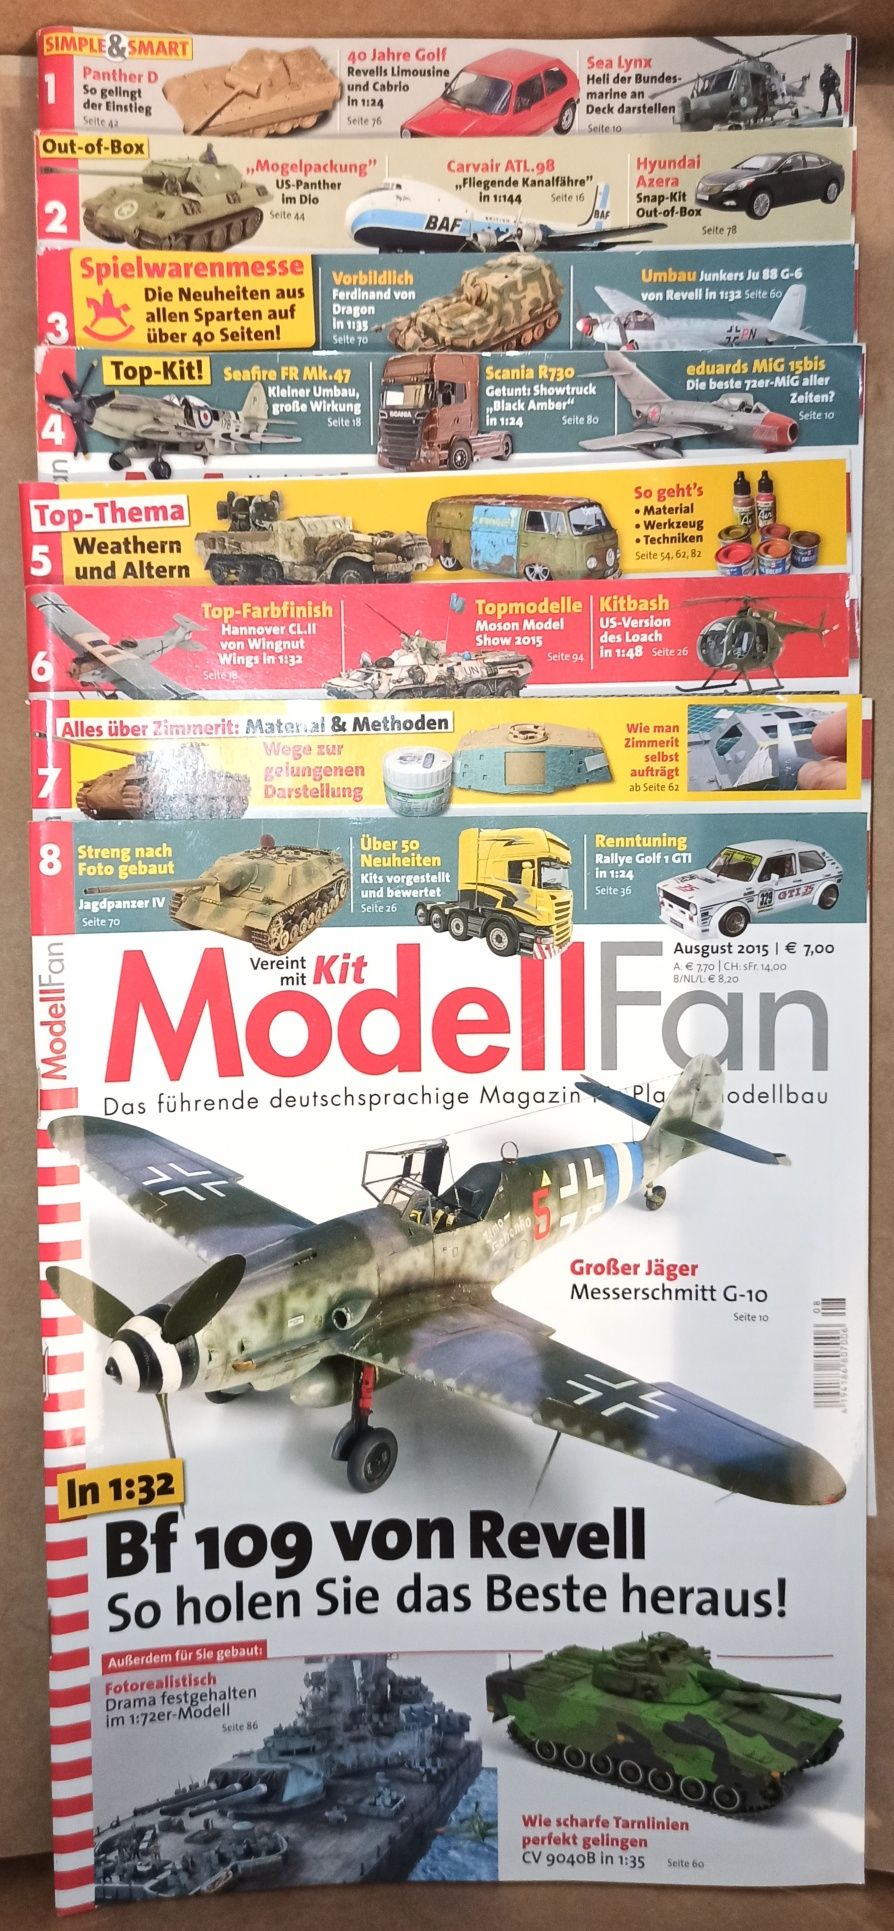 ModellFan Magazin.German model magzine collection-MODELLFAN,Modelling